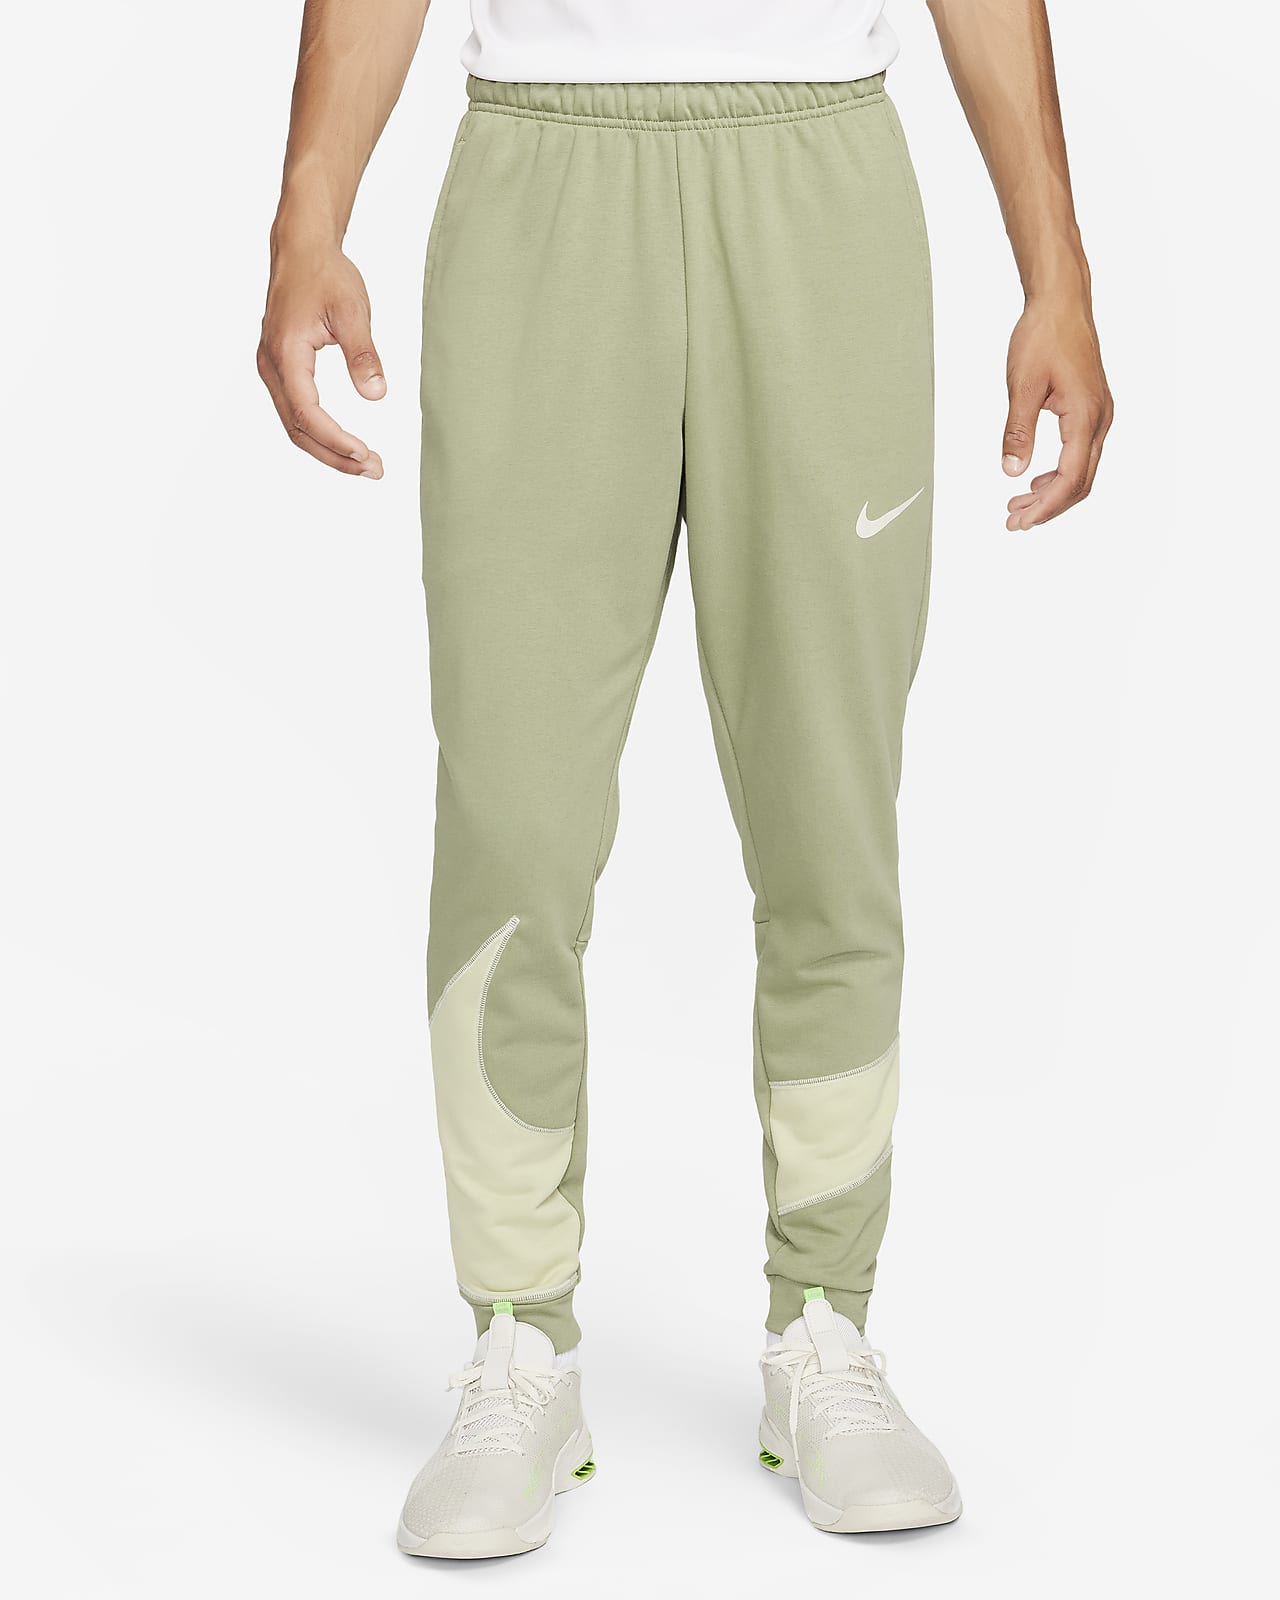 Pantalon de fitness fuselé Nike Dri-FIT pour homme